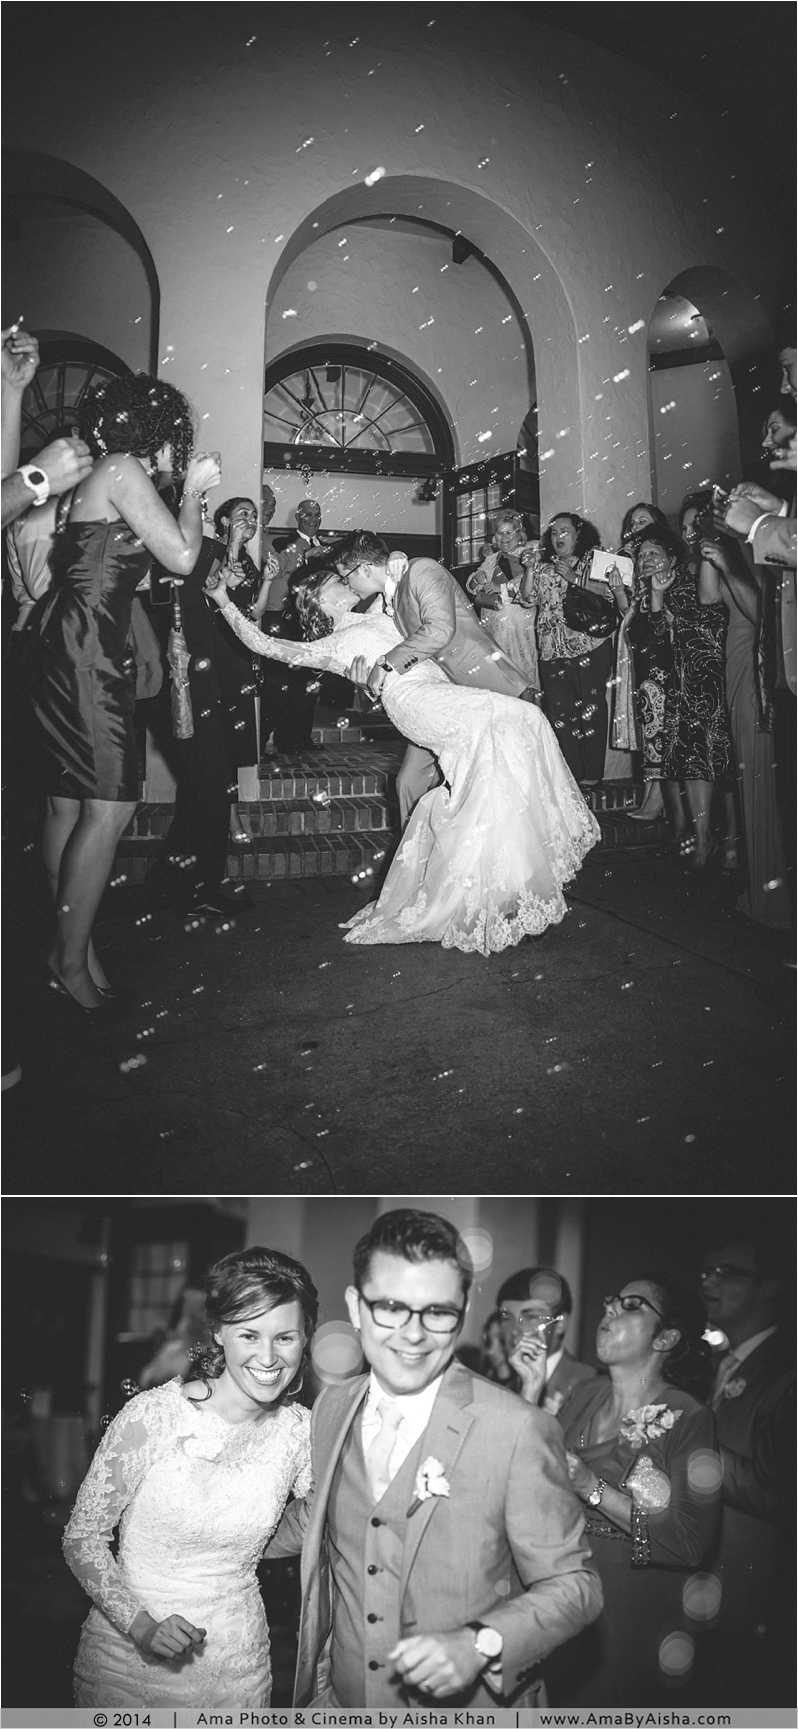 ©2014 | www.AmaByAisha.com | Houston wedding photography